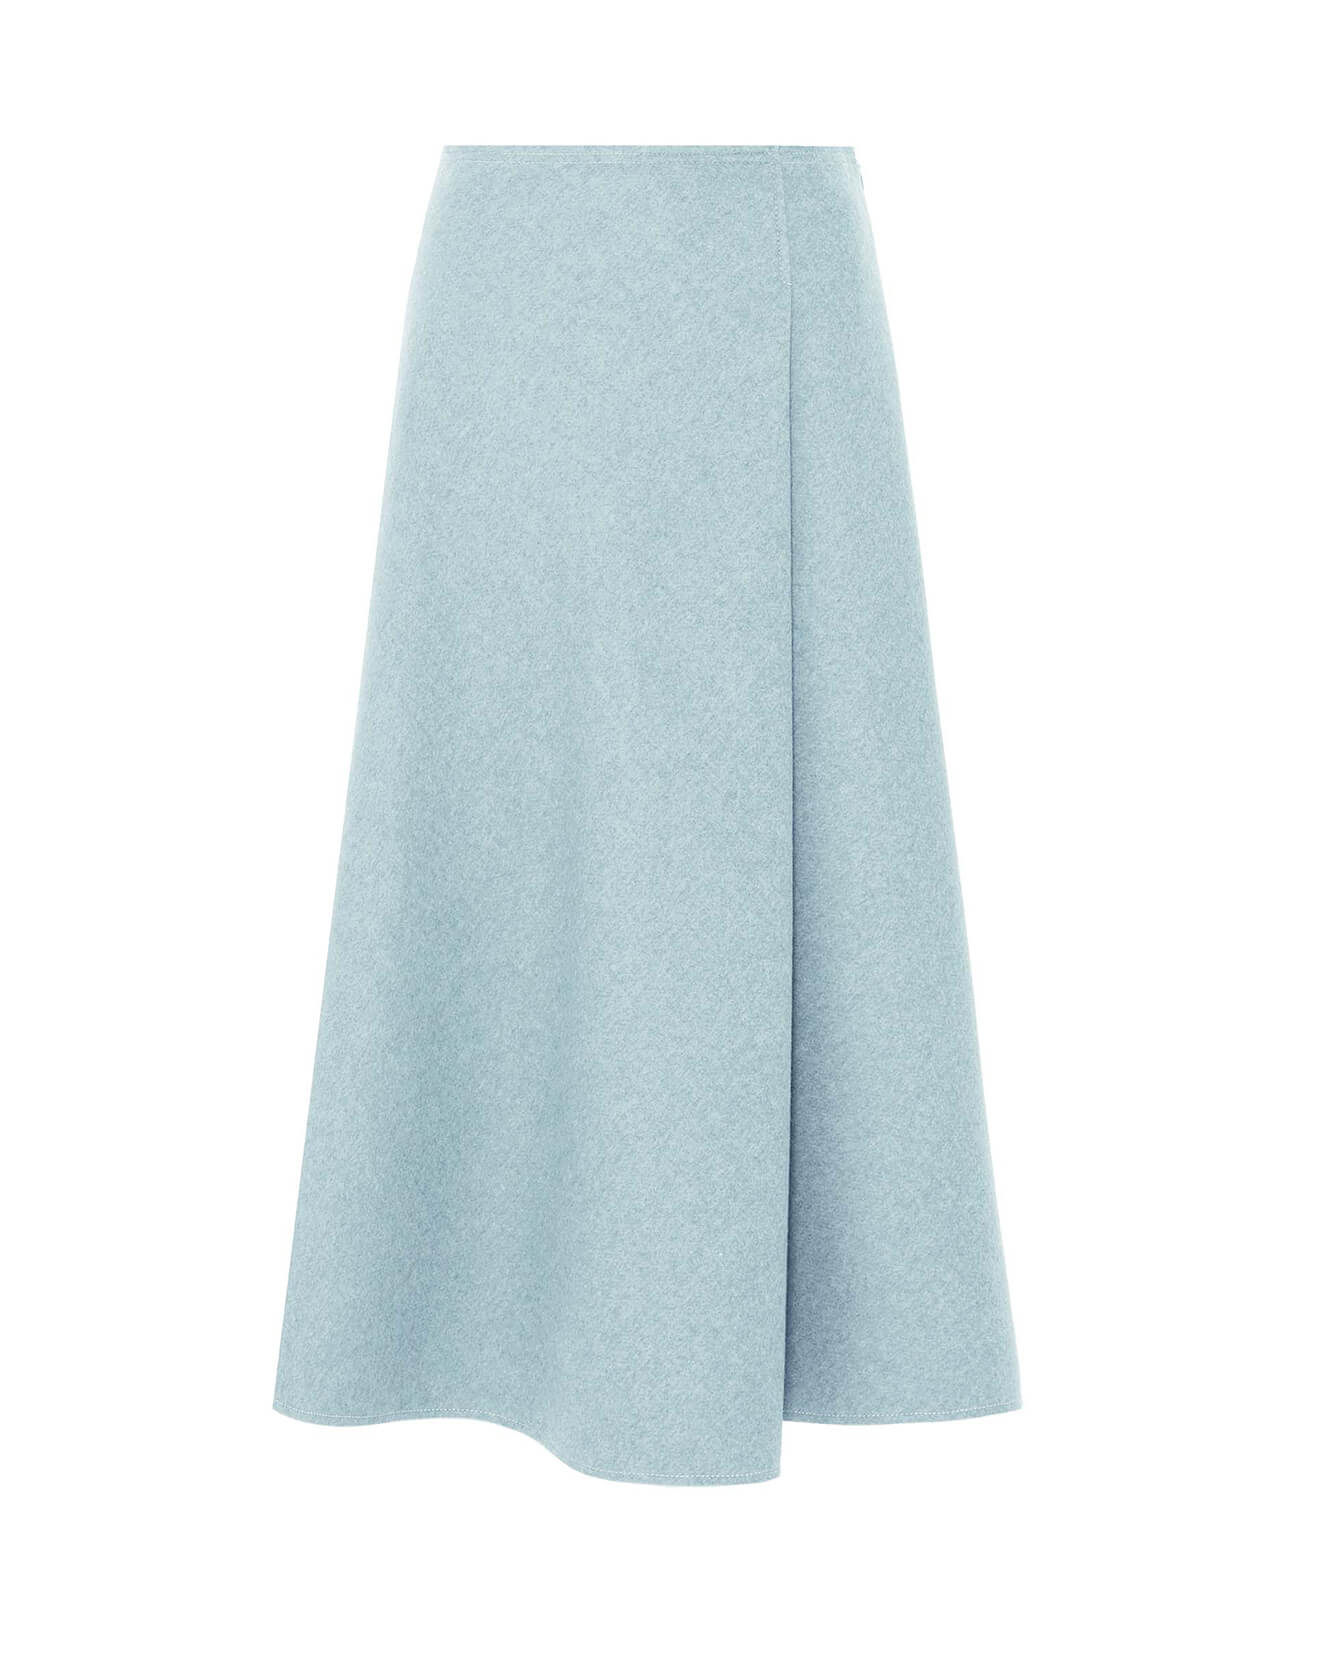 round cloth skirt